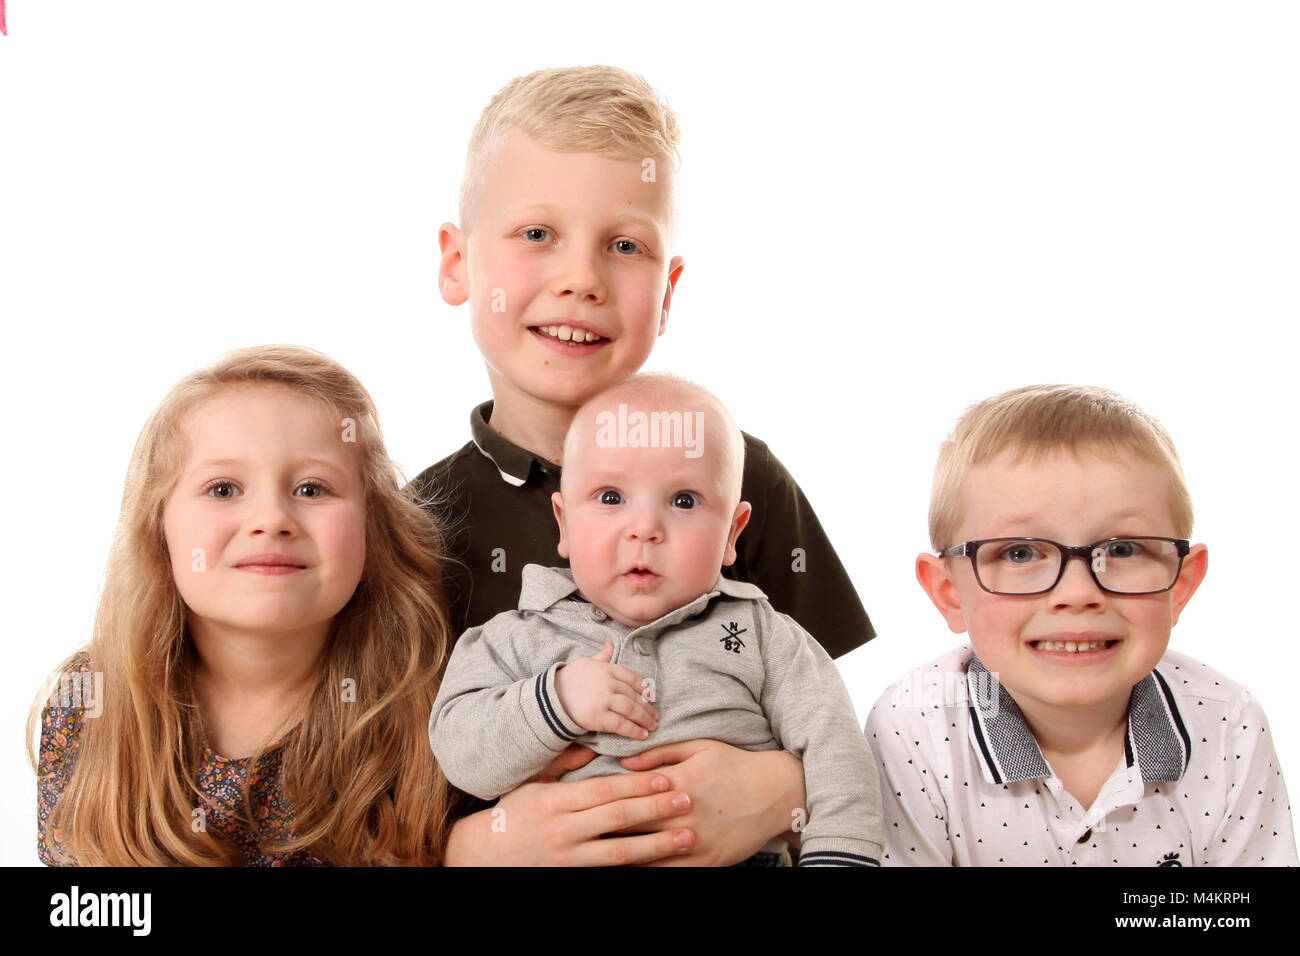 Familie, vier Geschwister glücklich und zusammen zu spielen, große Familie Stockfoto